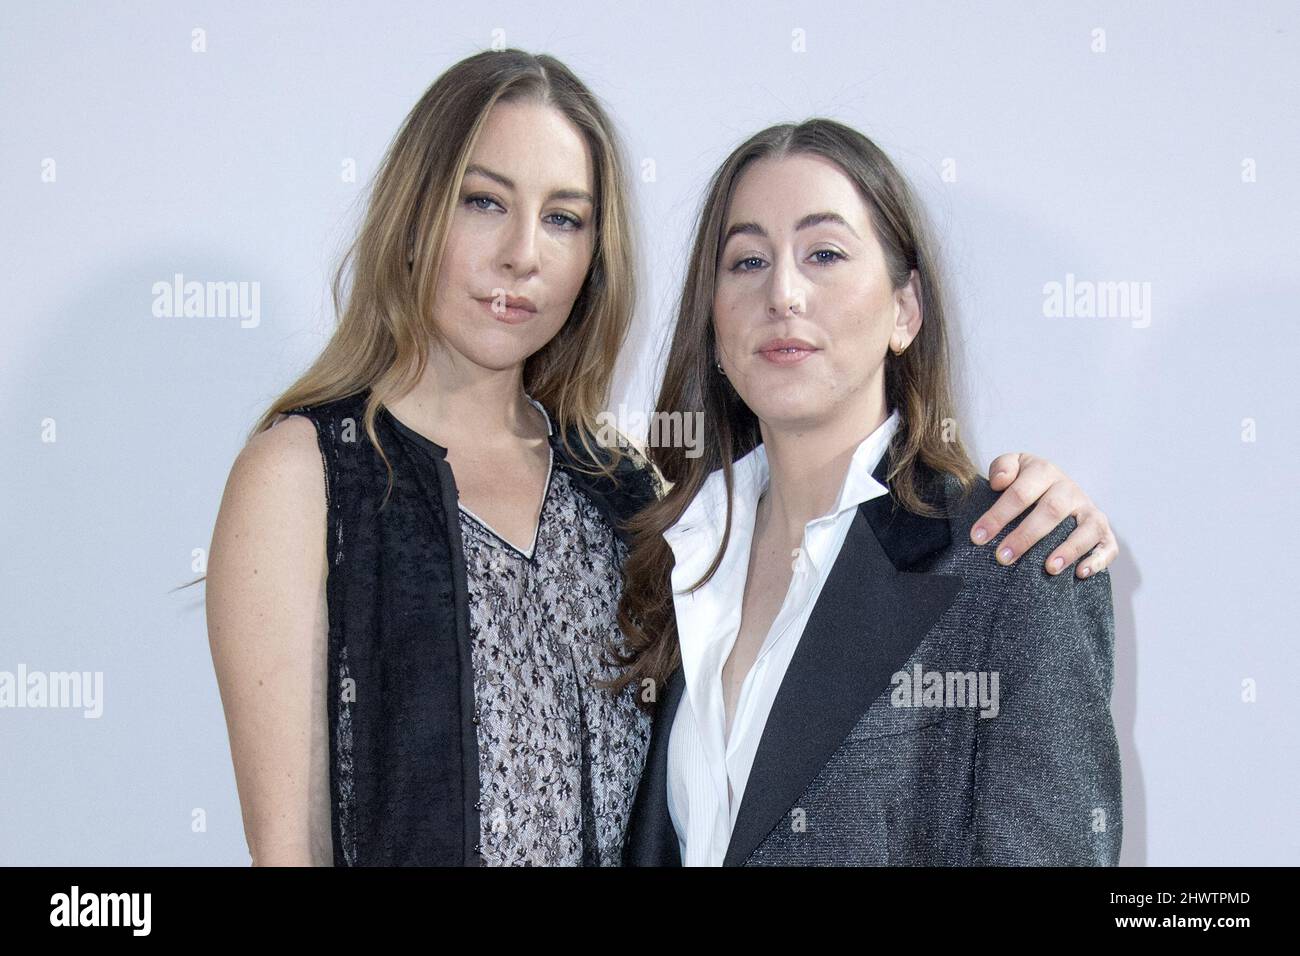 Este Haim and Alana Haim attending the Louis Vuitton Womenswear